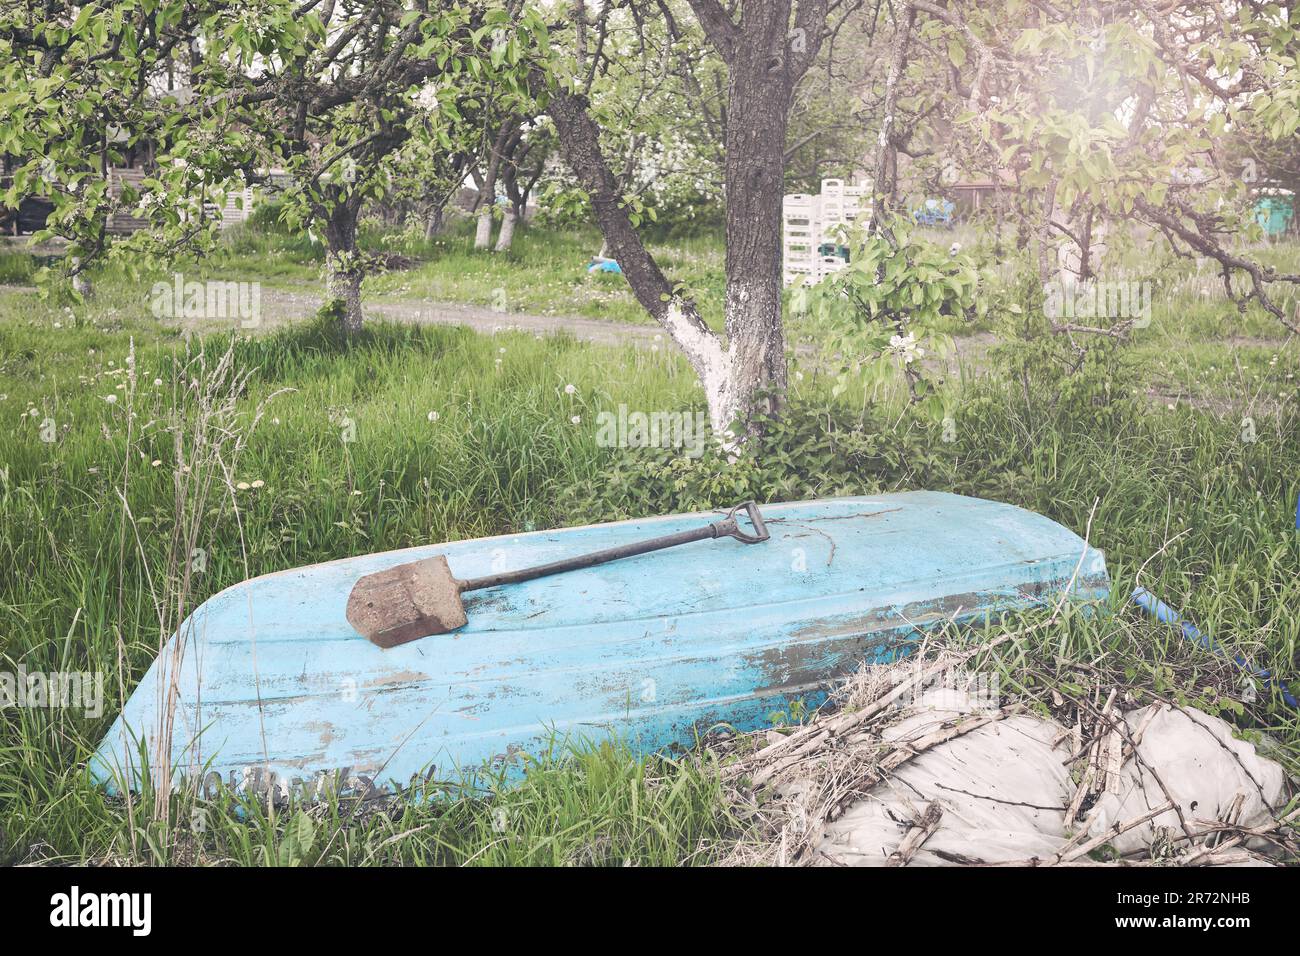 Un vieux bateau jeté sous un arbre, foyer sélectif, virage de couleur appliqué. Banque D'Images